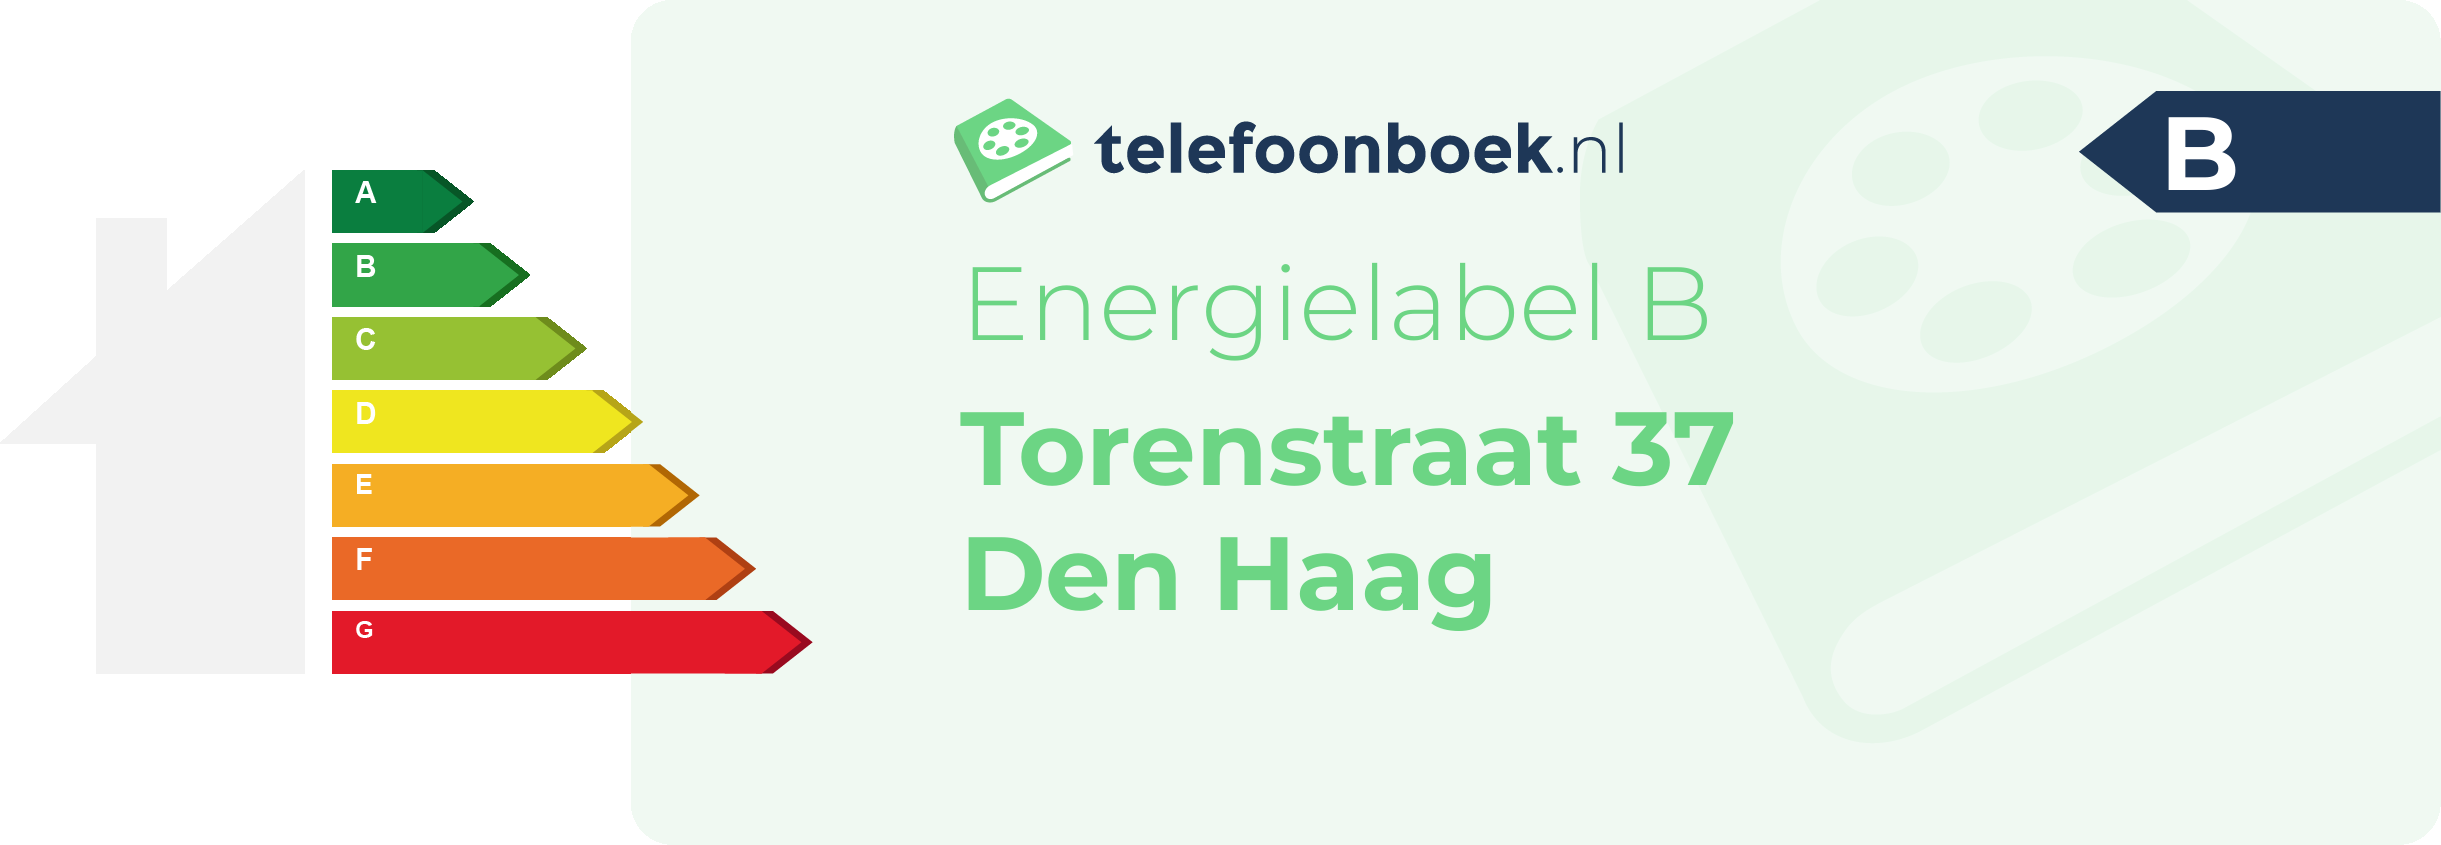 Energielabel Torenstraat 37 Den Haag